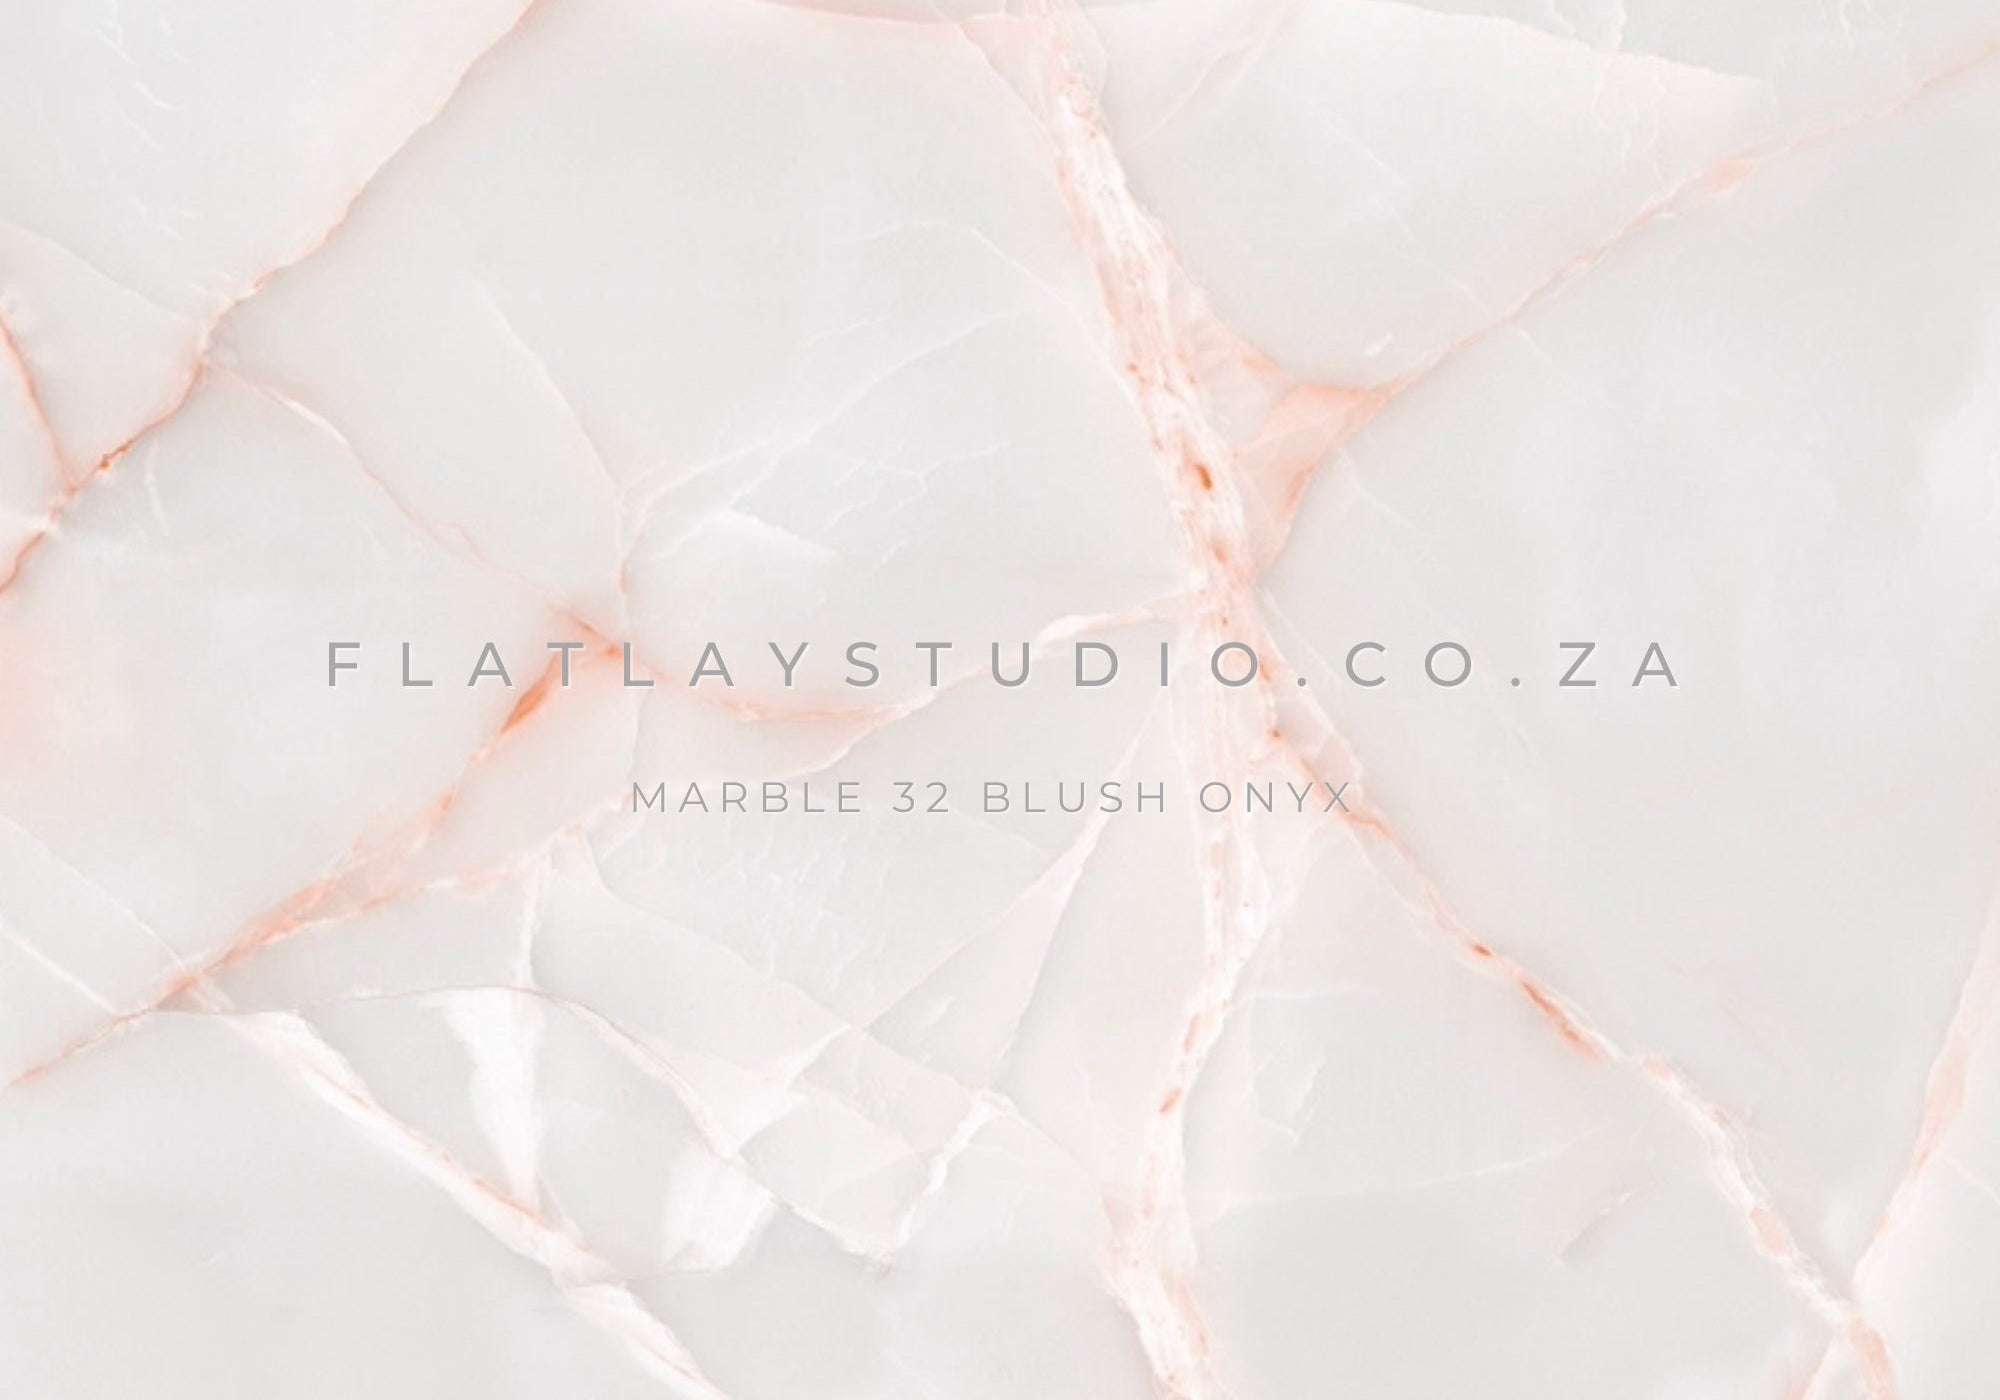 Marble 32 Blush Onyx - FlatlayStudio Flatlay Styling Board